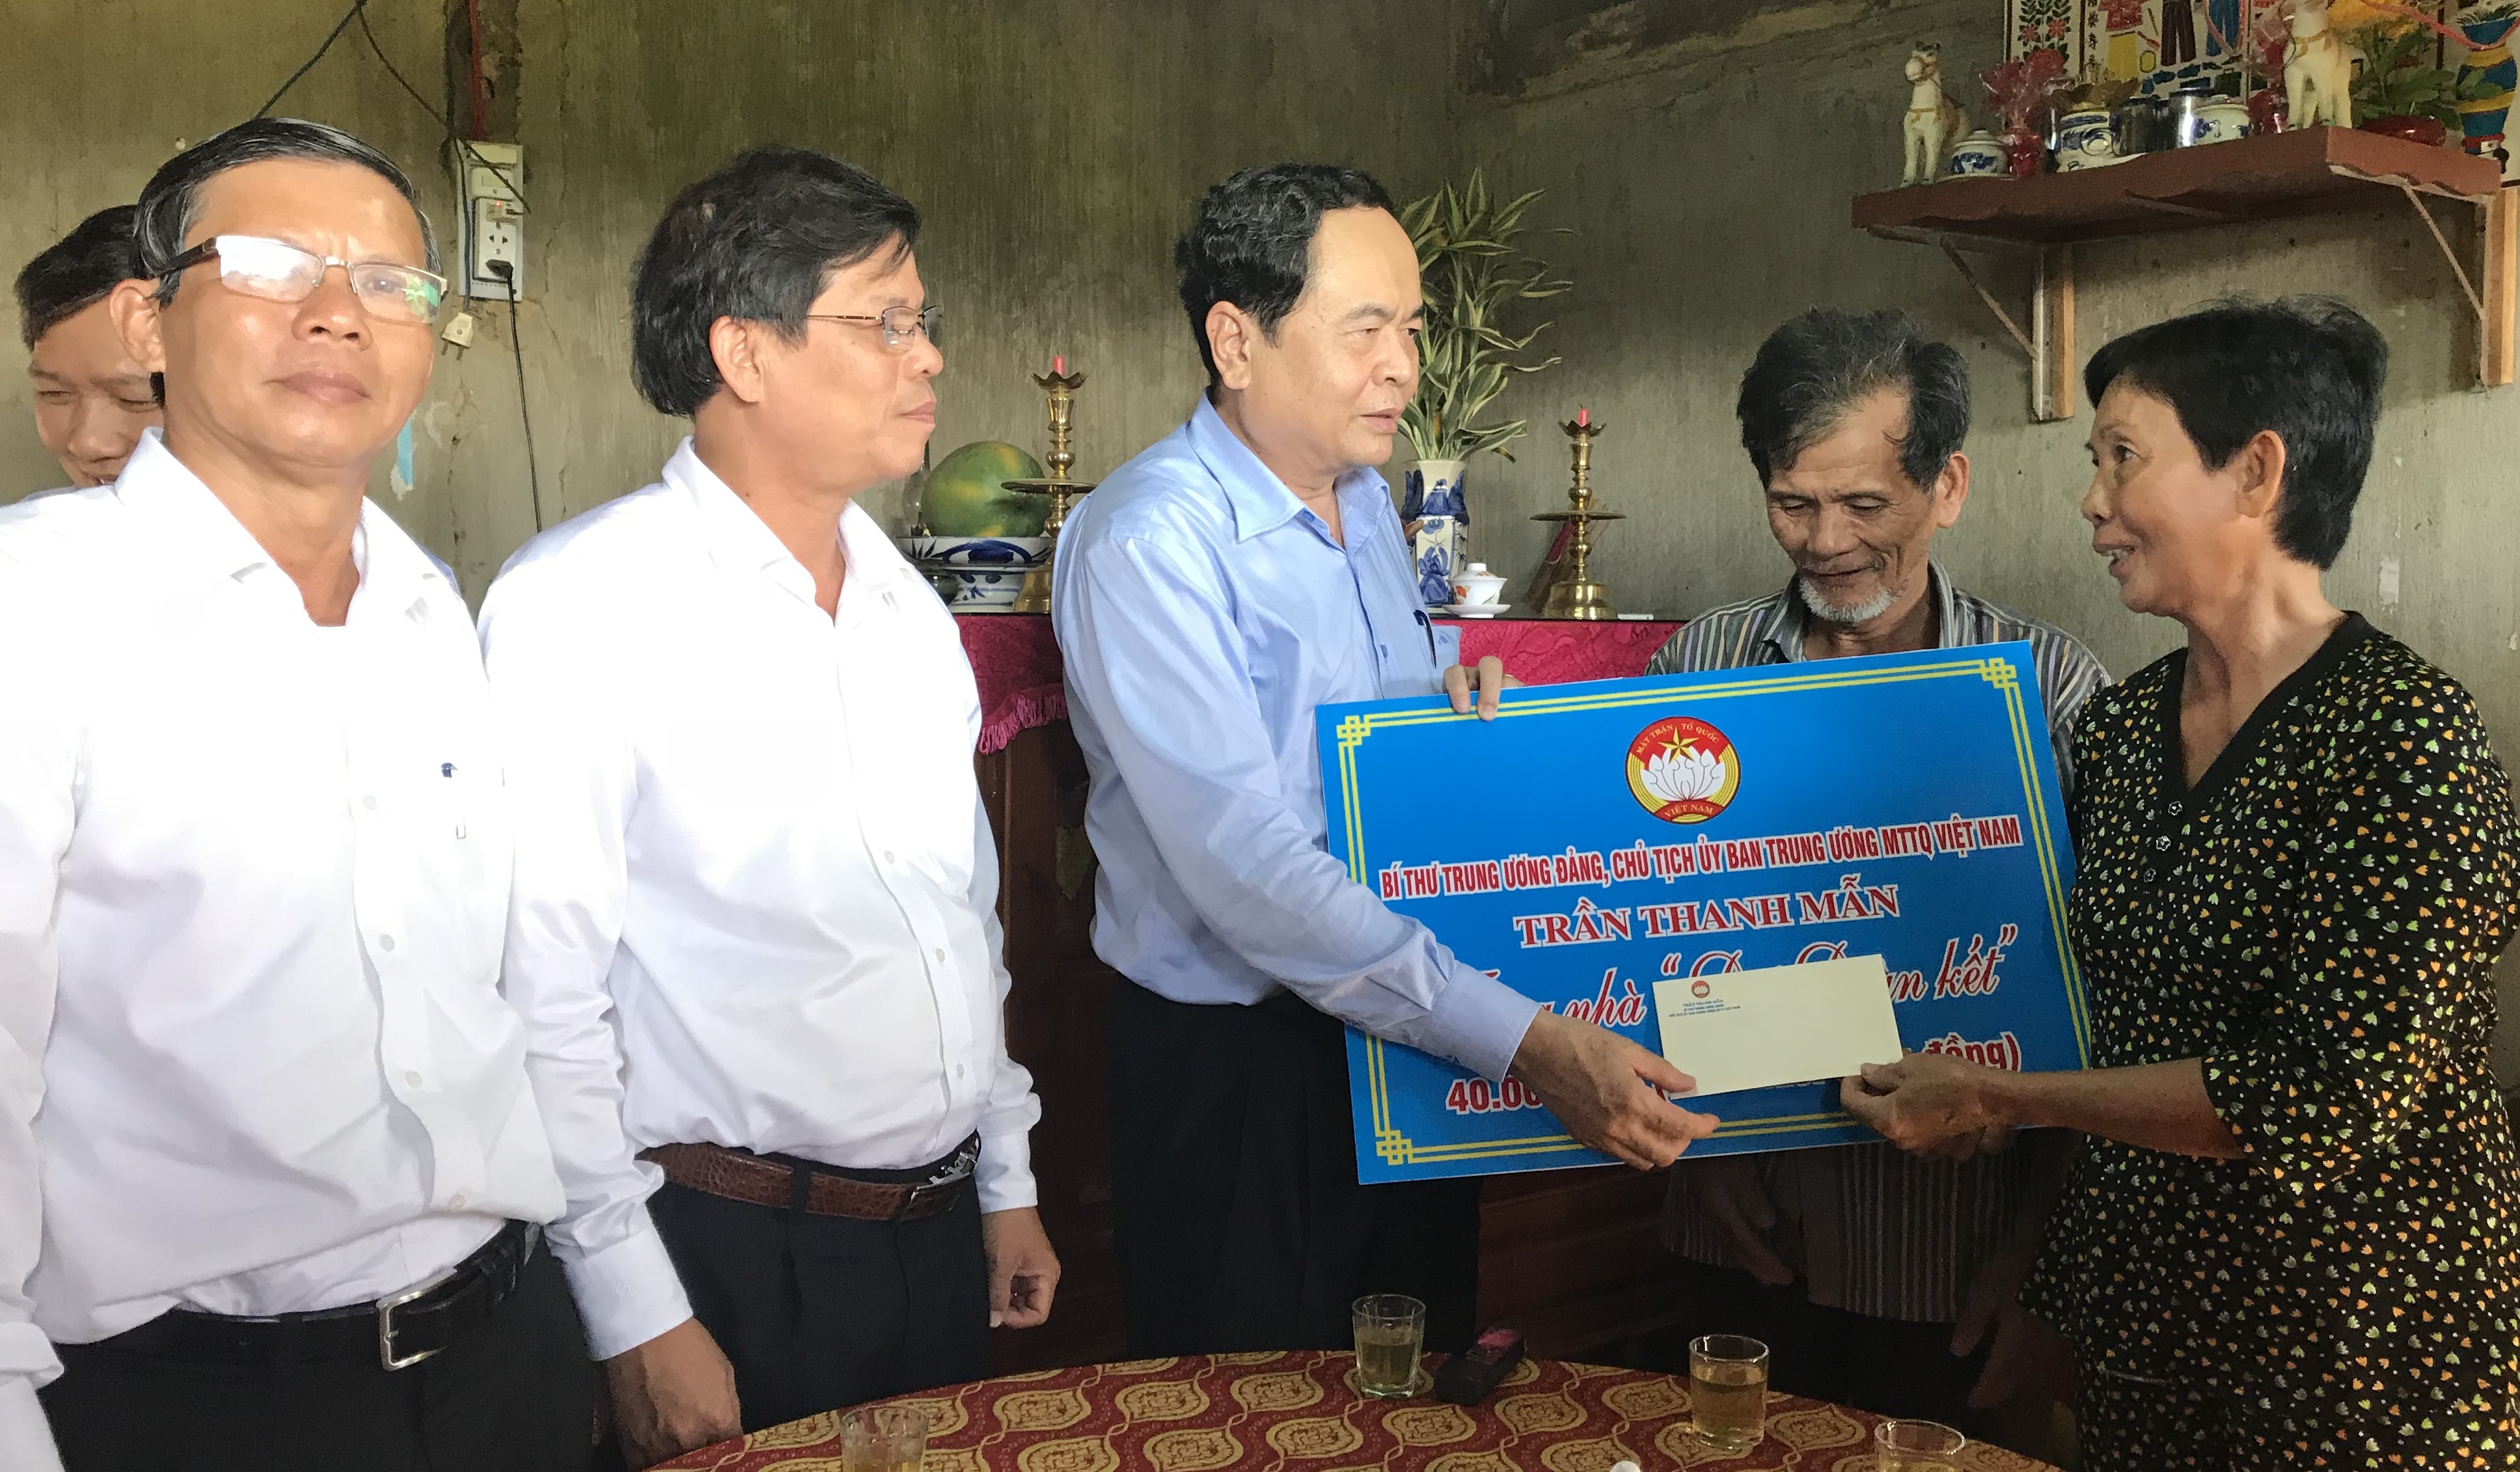 Đoàn công tác Ủy ban Trung ương MTTQ Việt Nam: Thăm và trao tiền hỗ trợ xây nhà Đại đoàn kết cho các hộ nghèo